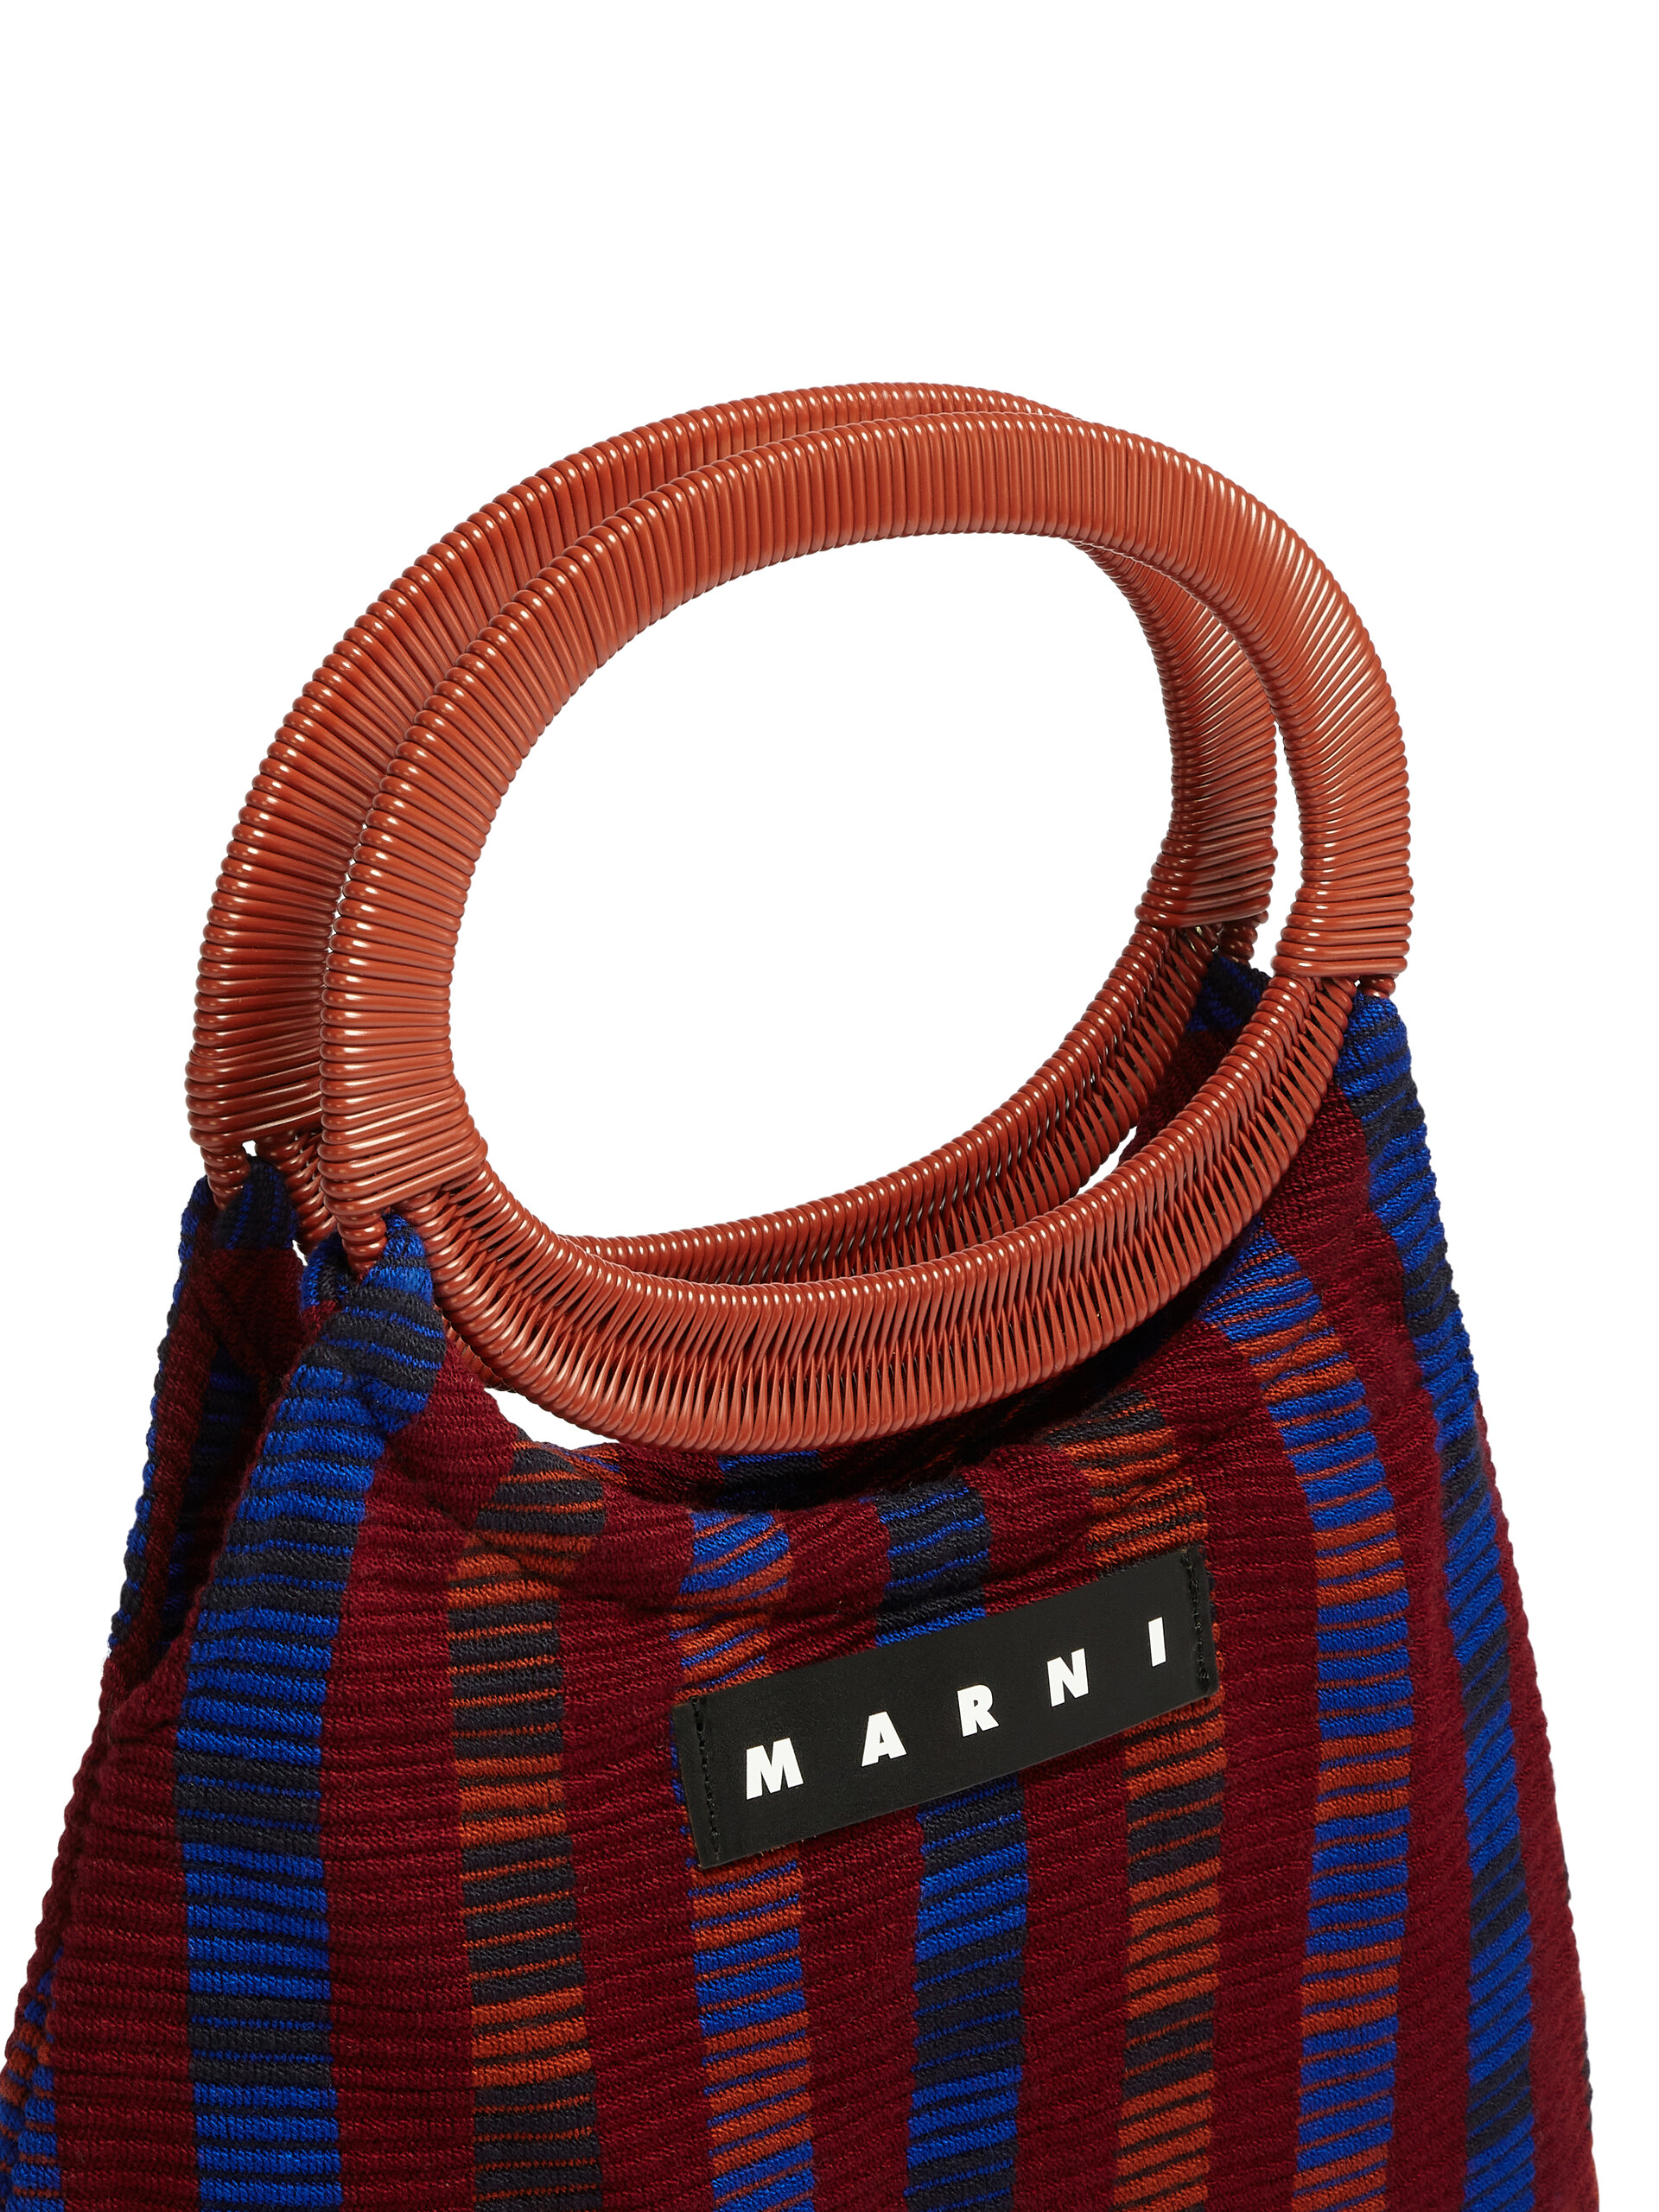 MARNI MARKET BOAT bag in multicolor red striped cotton - Furniture - Image 4